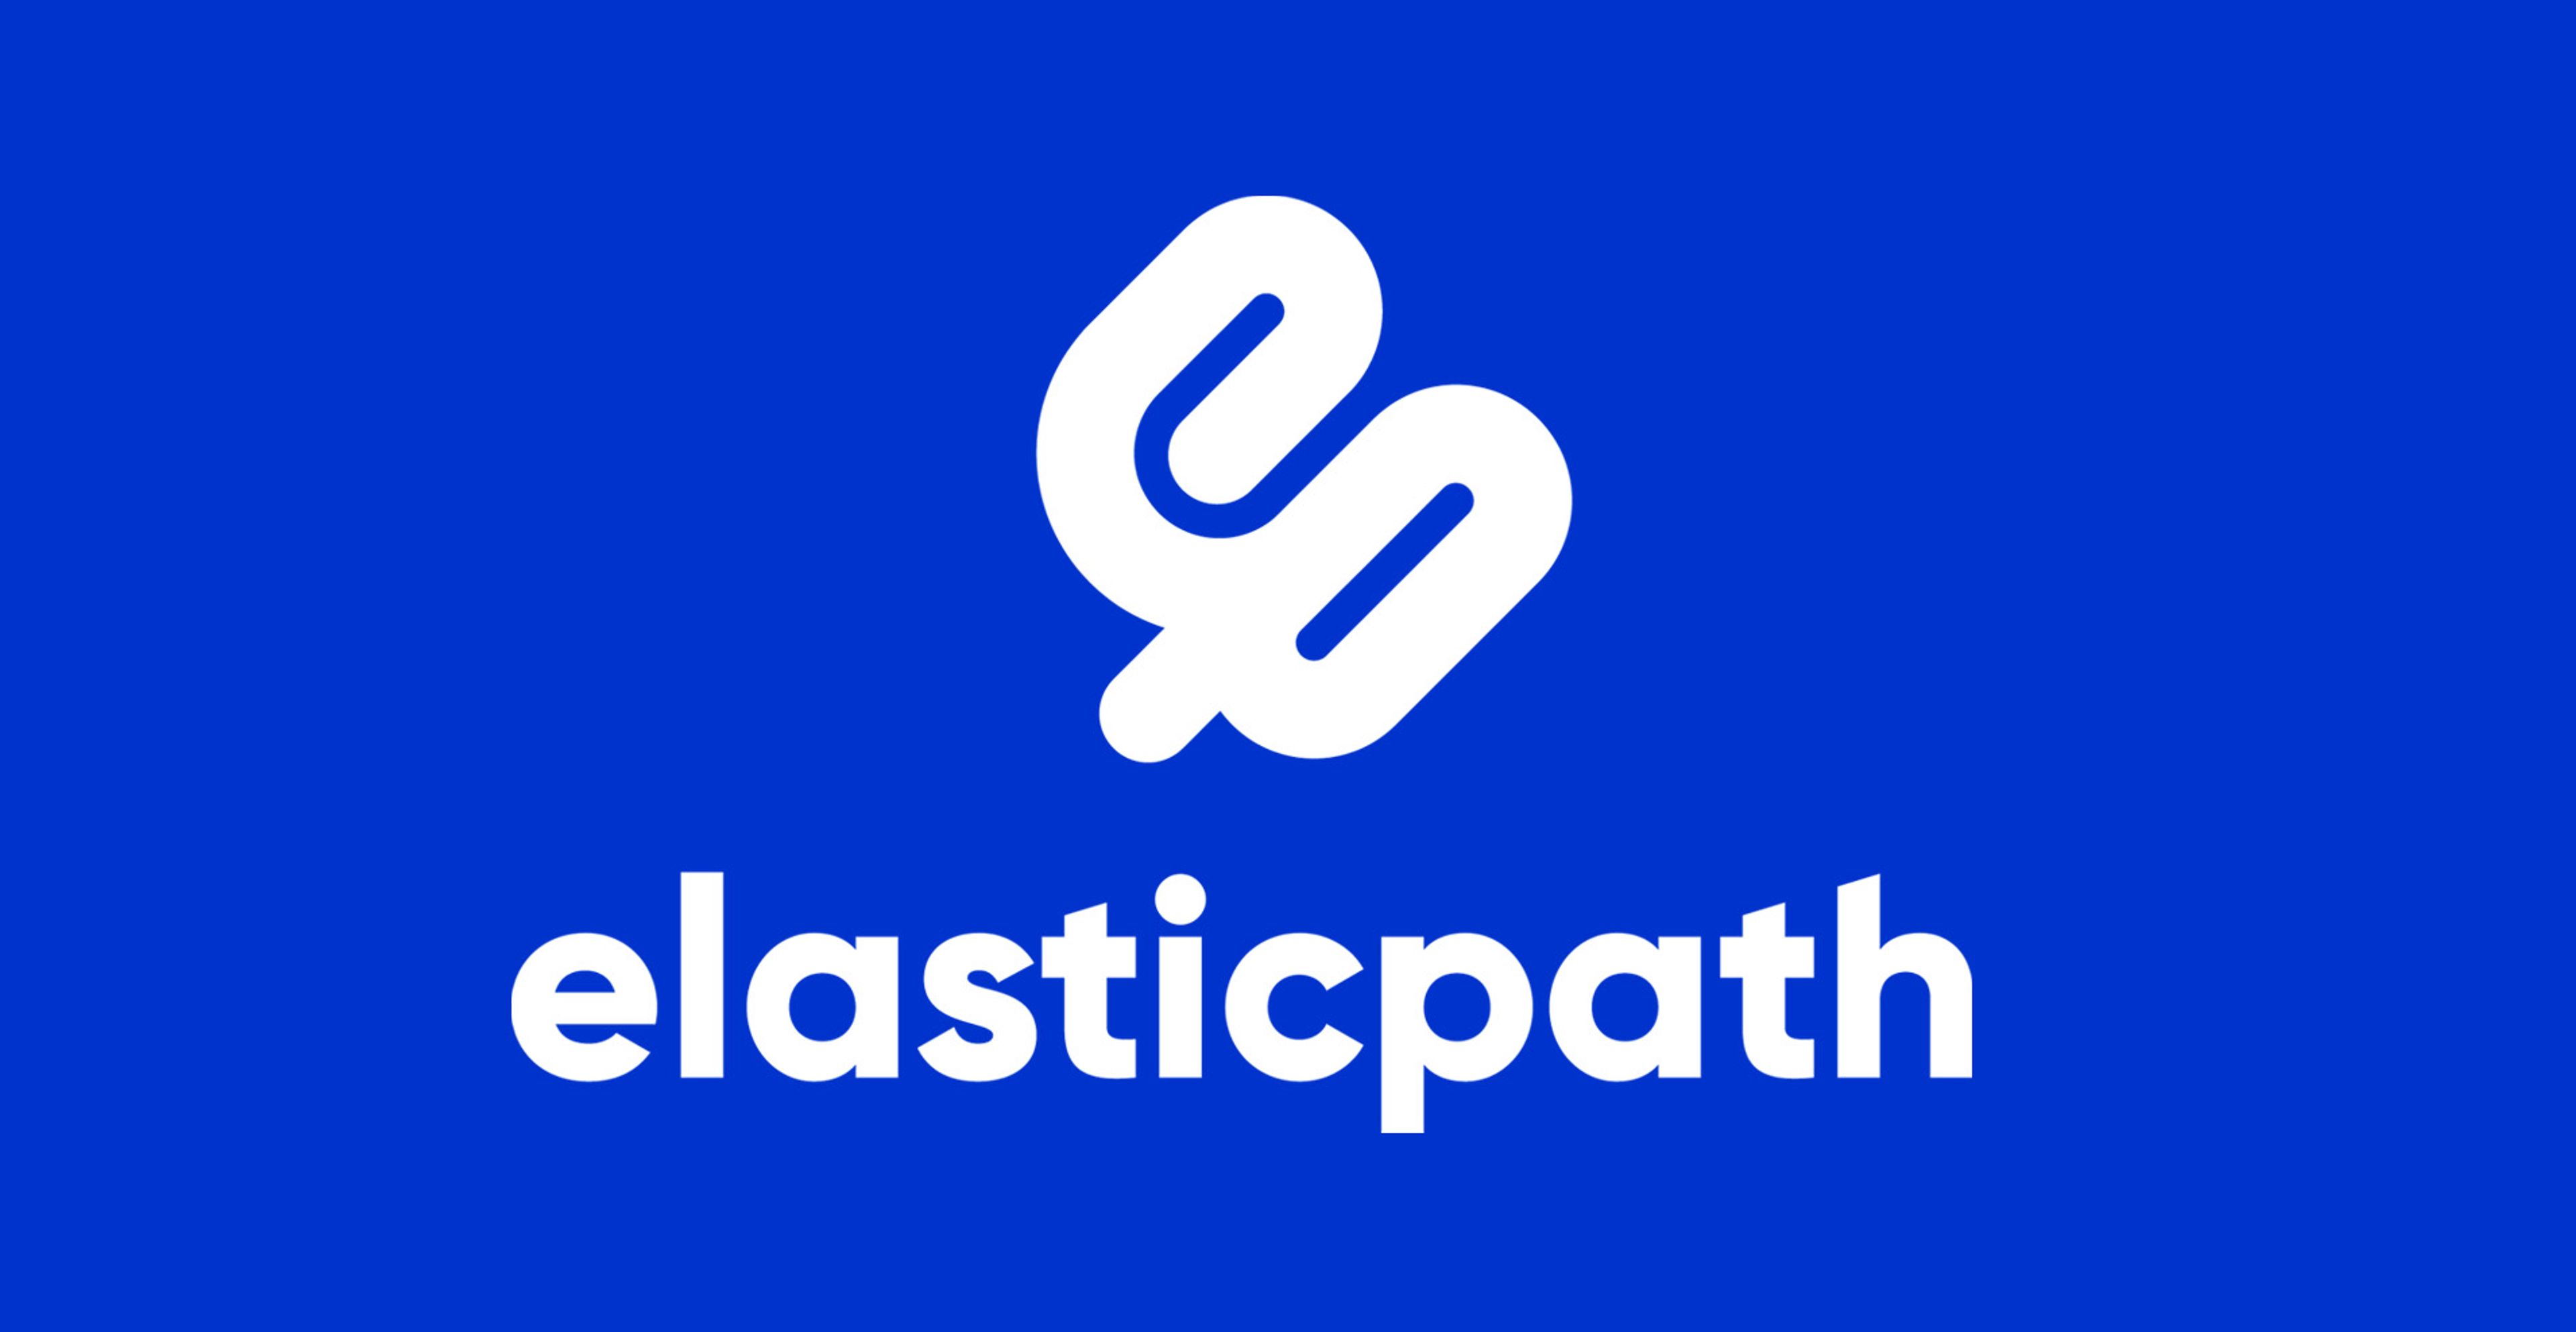 Elastic Path logo against a dark blue background